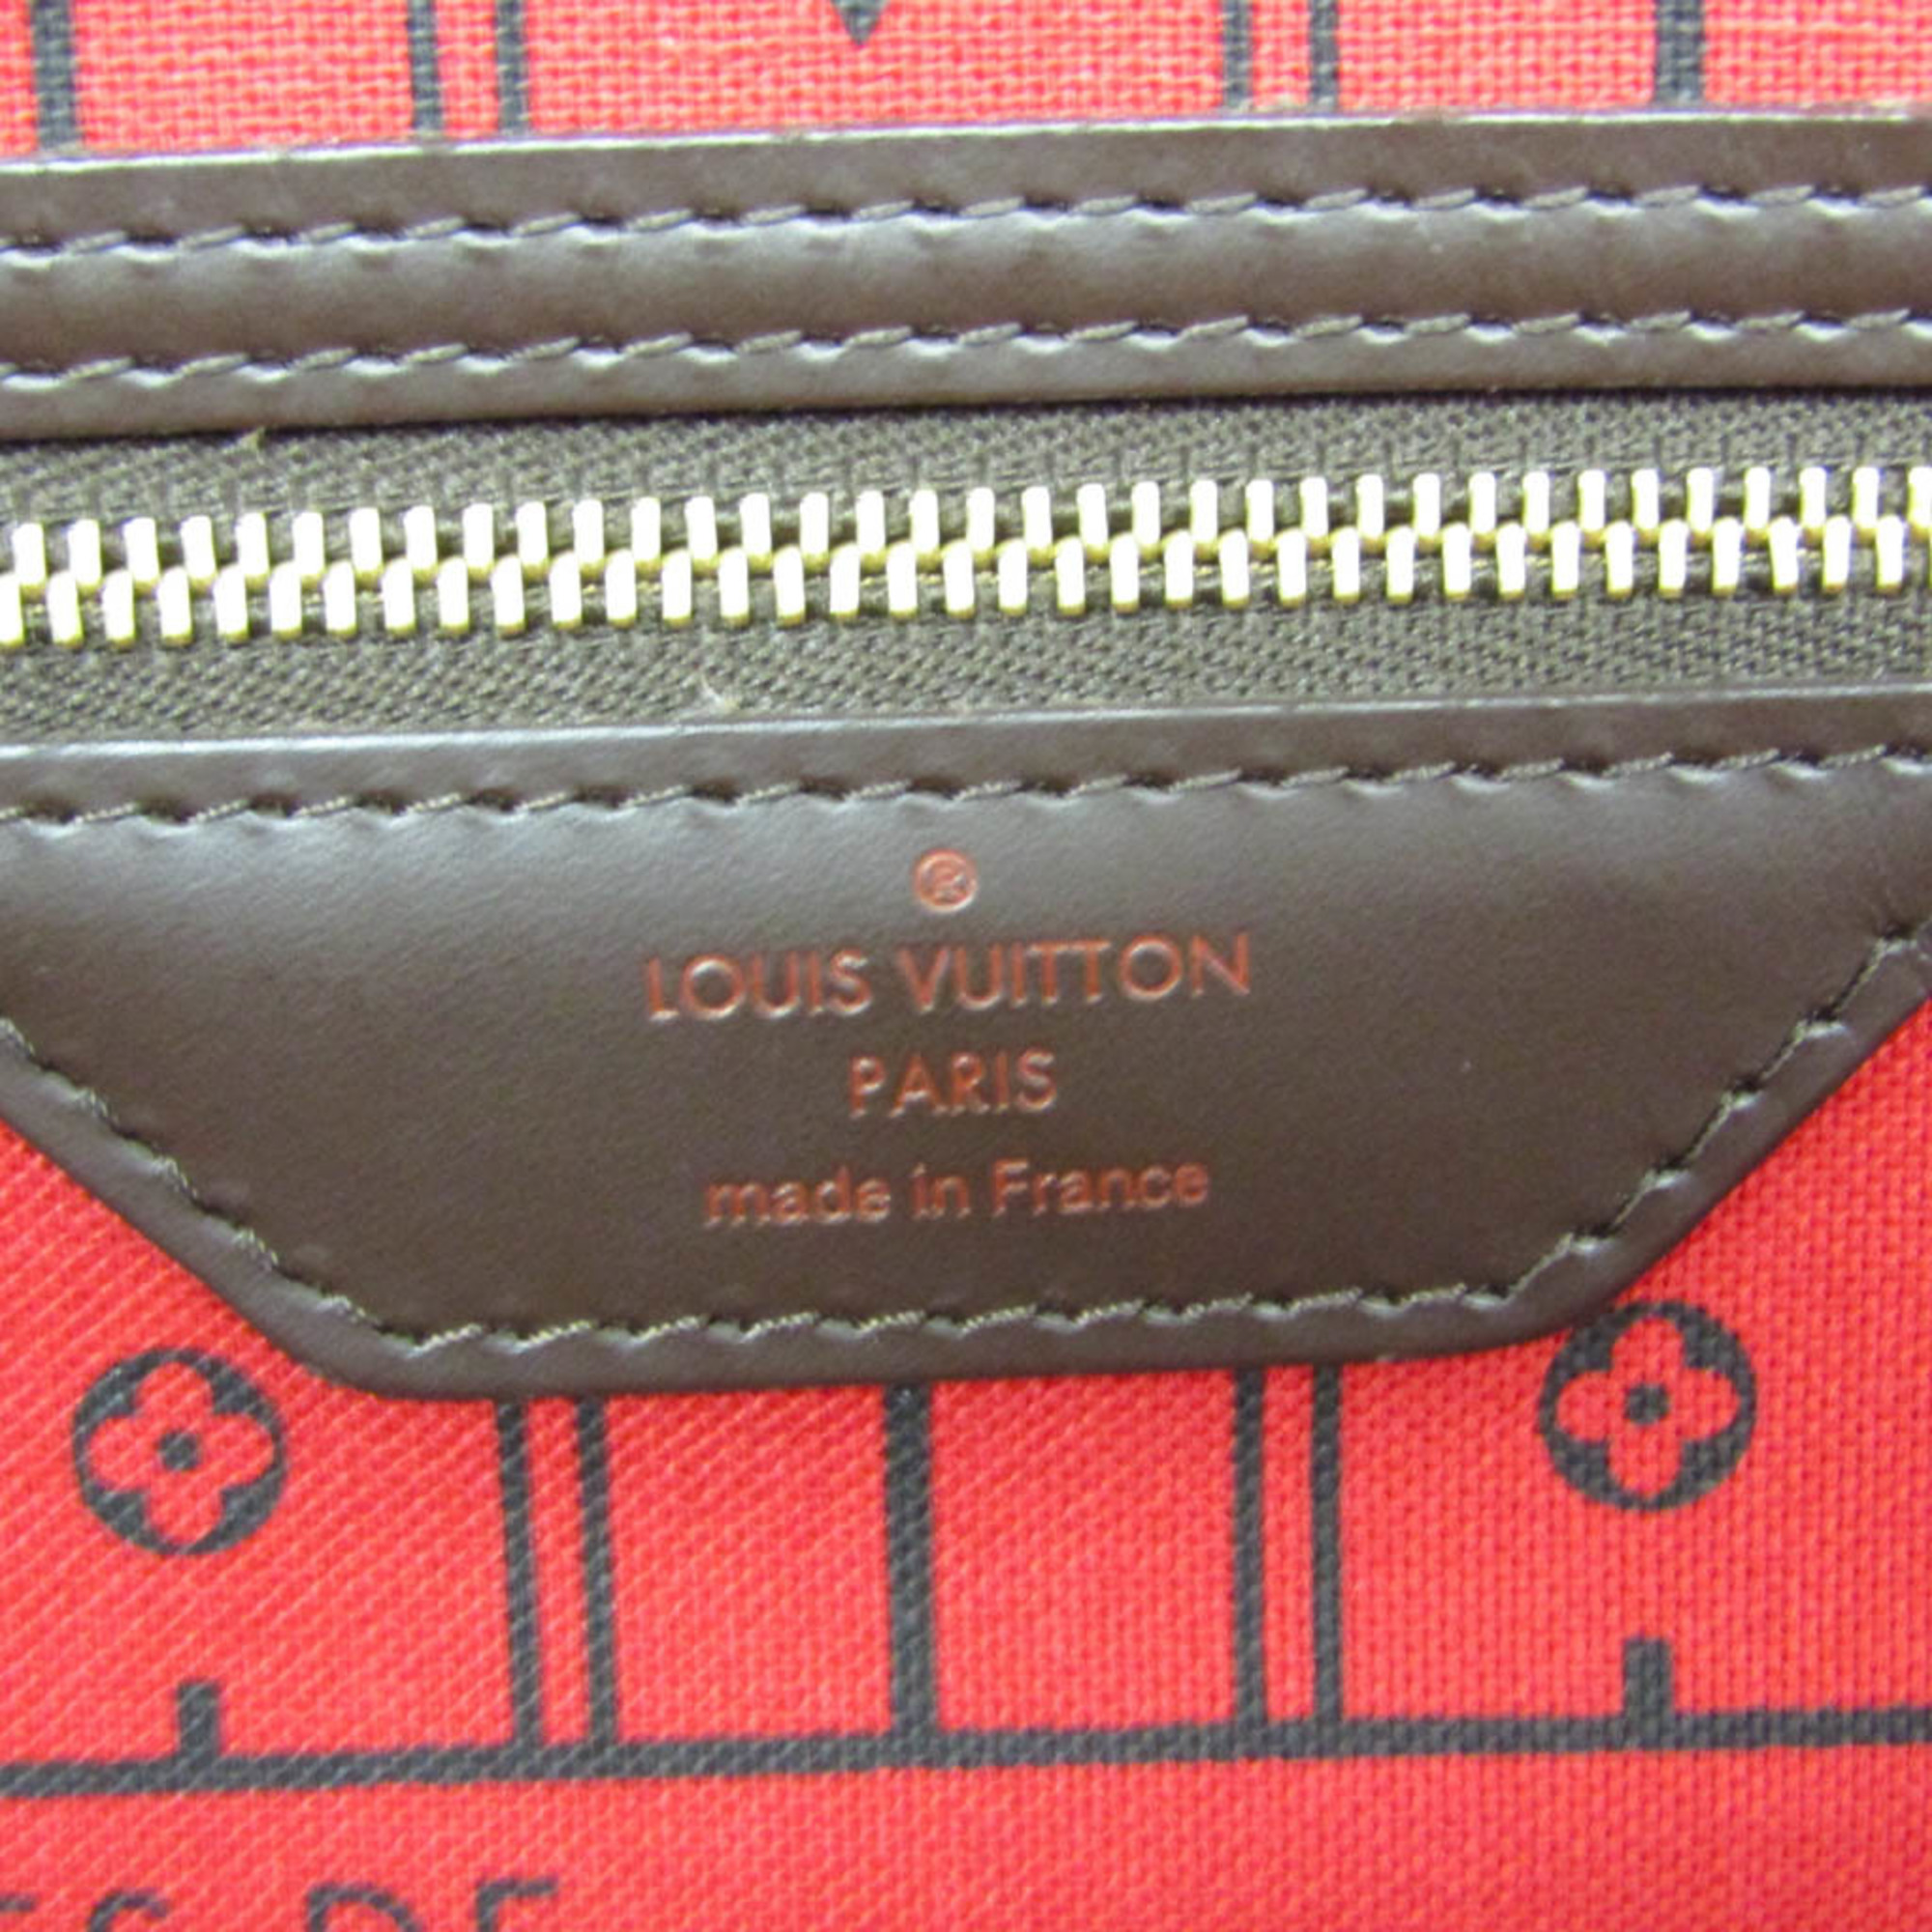 ルイ・ヴィトン(Louis Vuitton) ダミエ ネヴァーフルMM N51105 レディース トートバッグ エベヌ